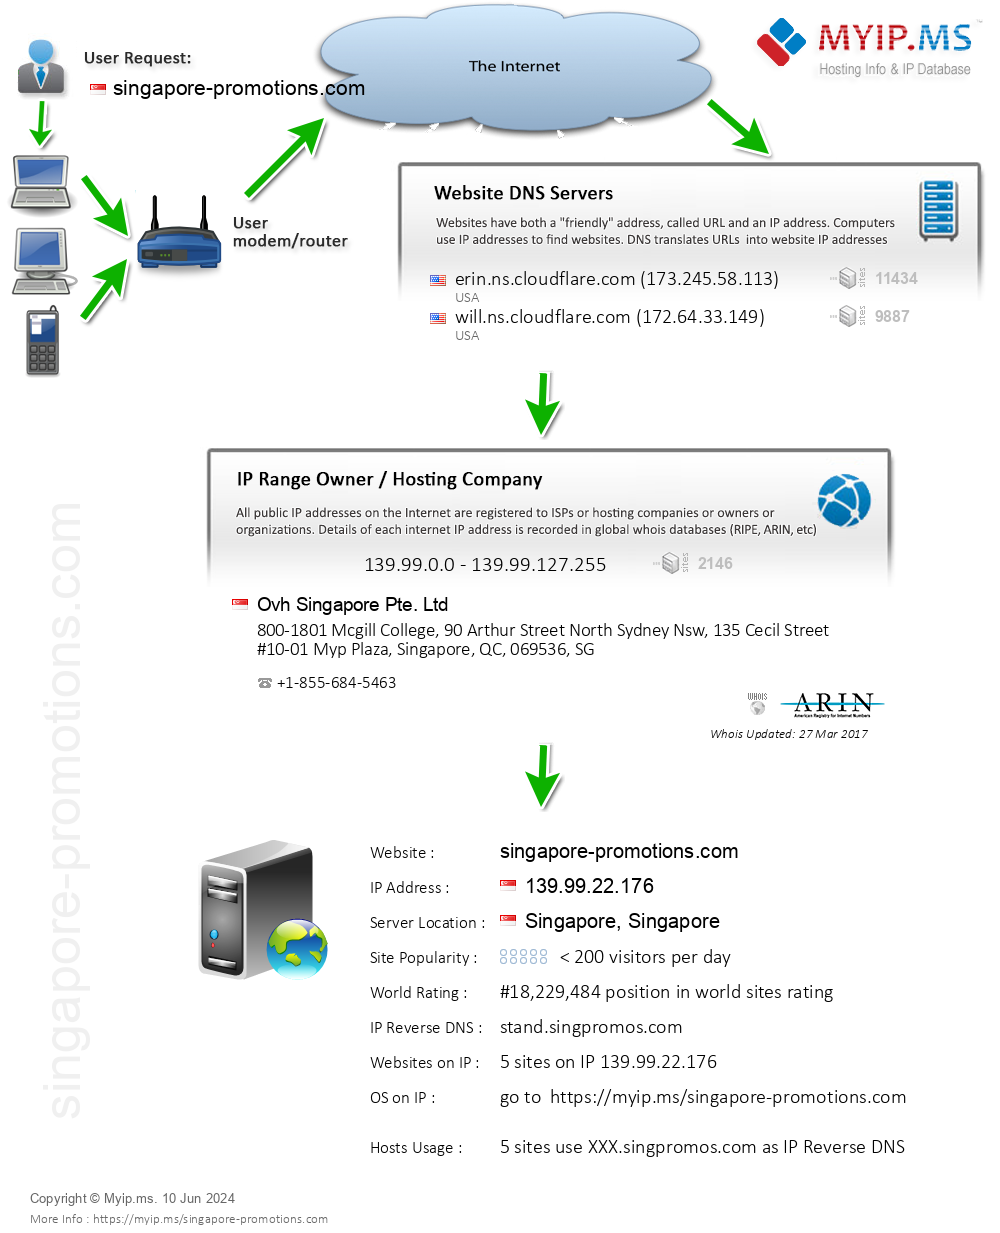 Singapore-promotions.com - Website Hosting Visual IP Diagram